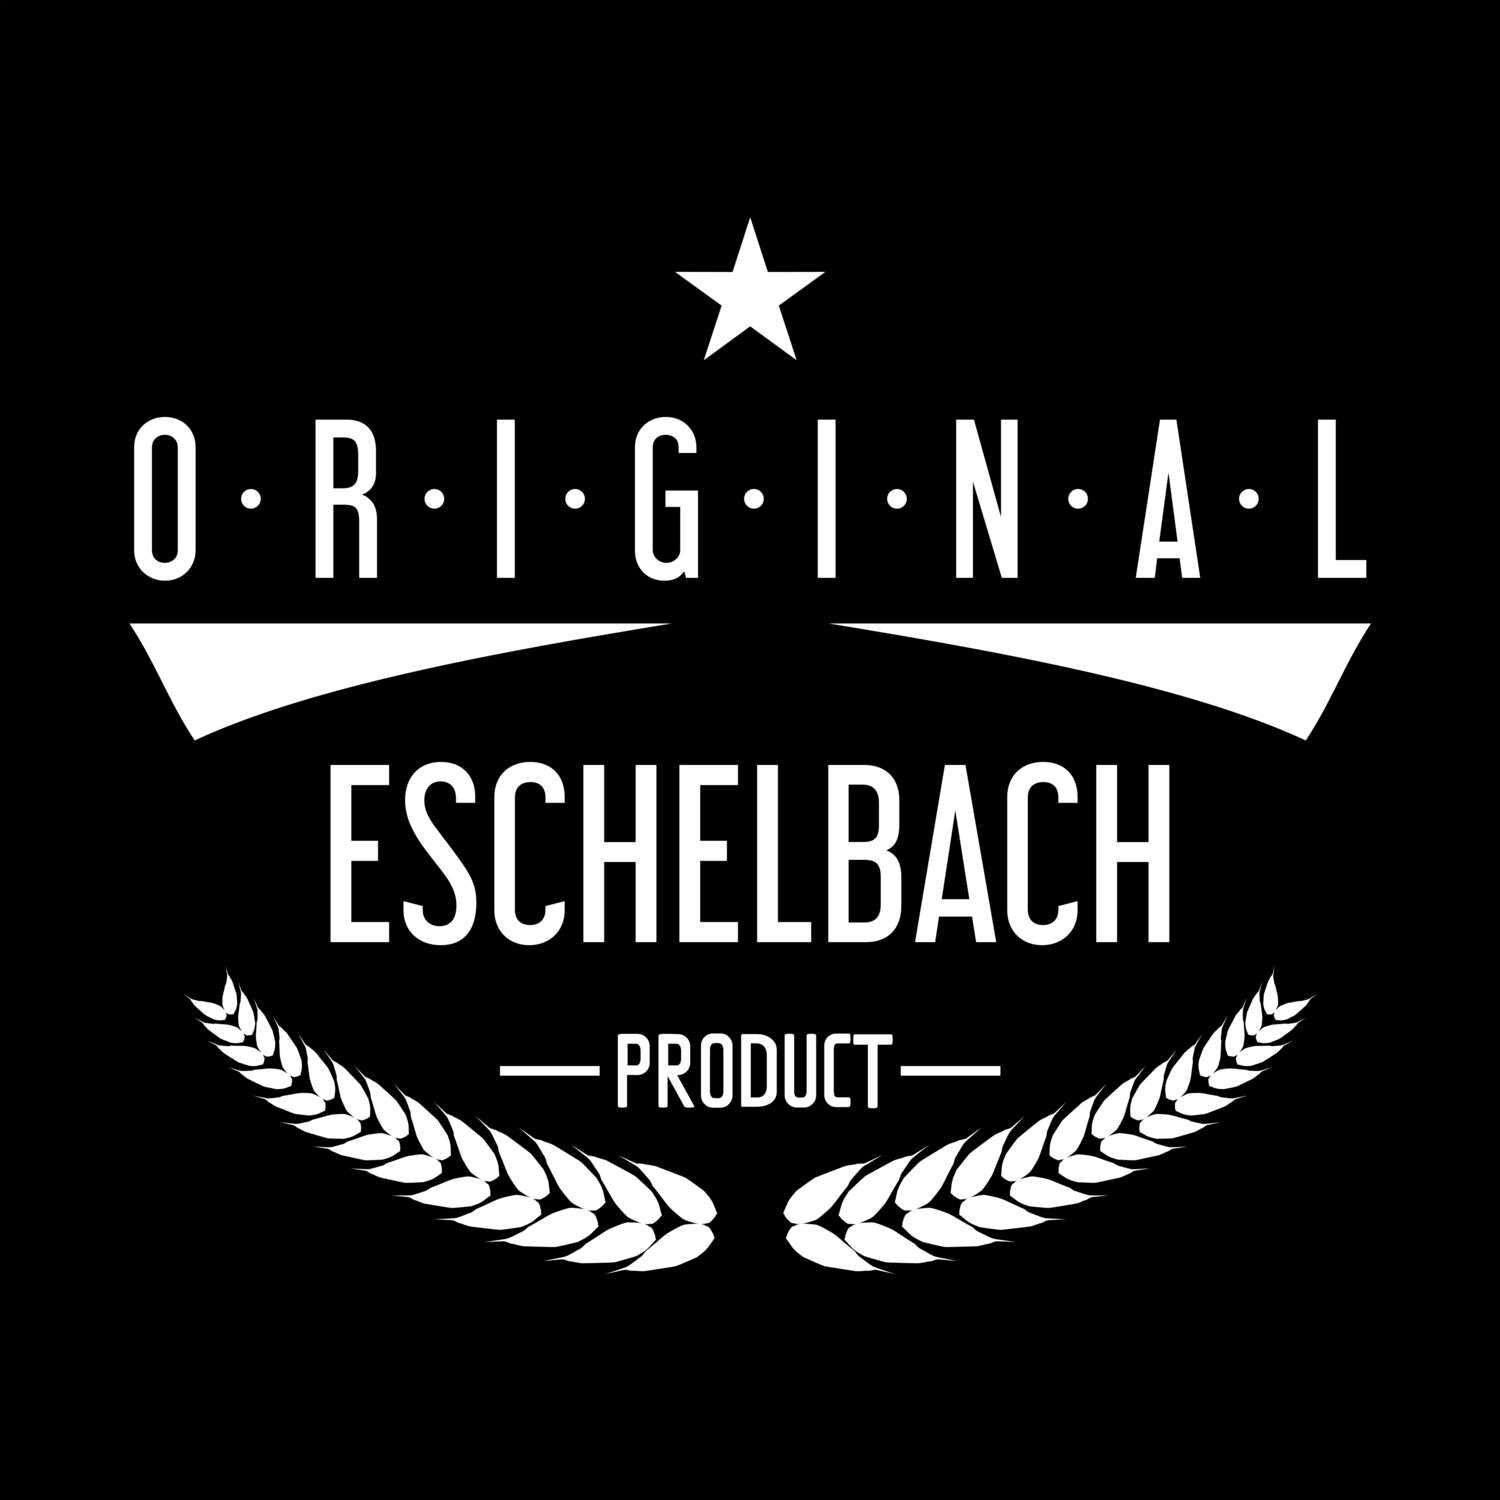 Eschelbach T-Shirt »Original Product«